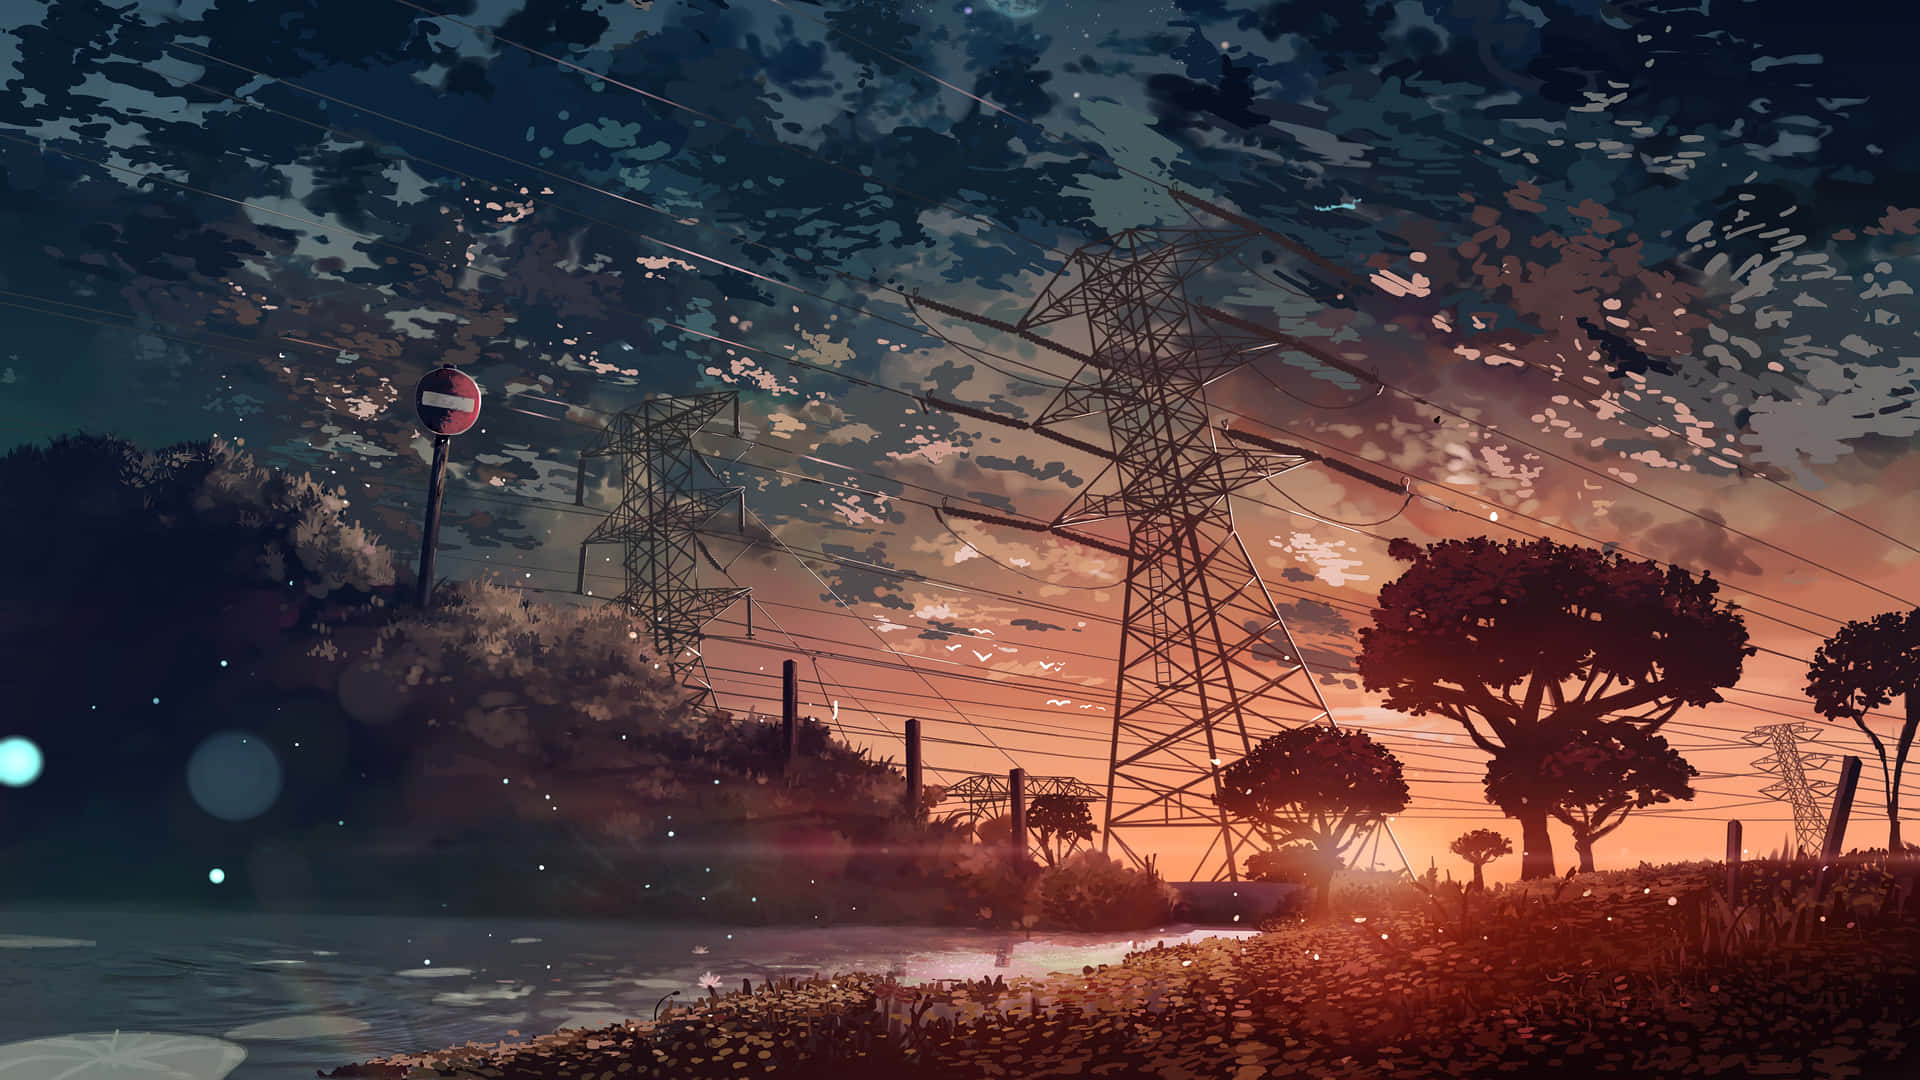 Nyd Den Rolige Skønhed I Naturen Gennem En Anime-inspireret Scenerisk Baggrund. Wallpaper